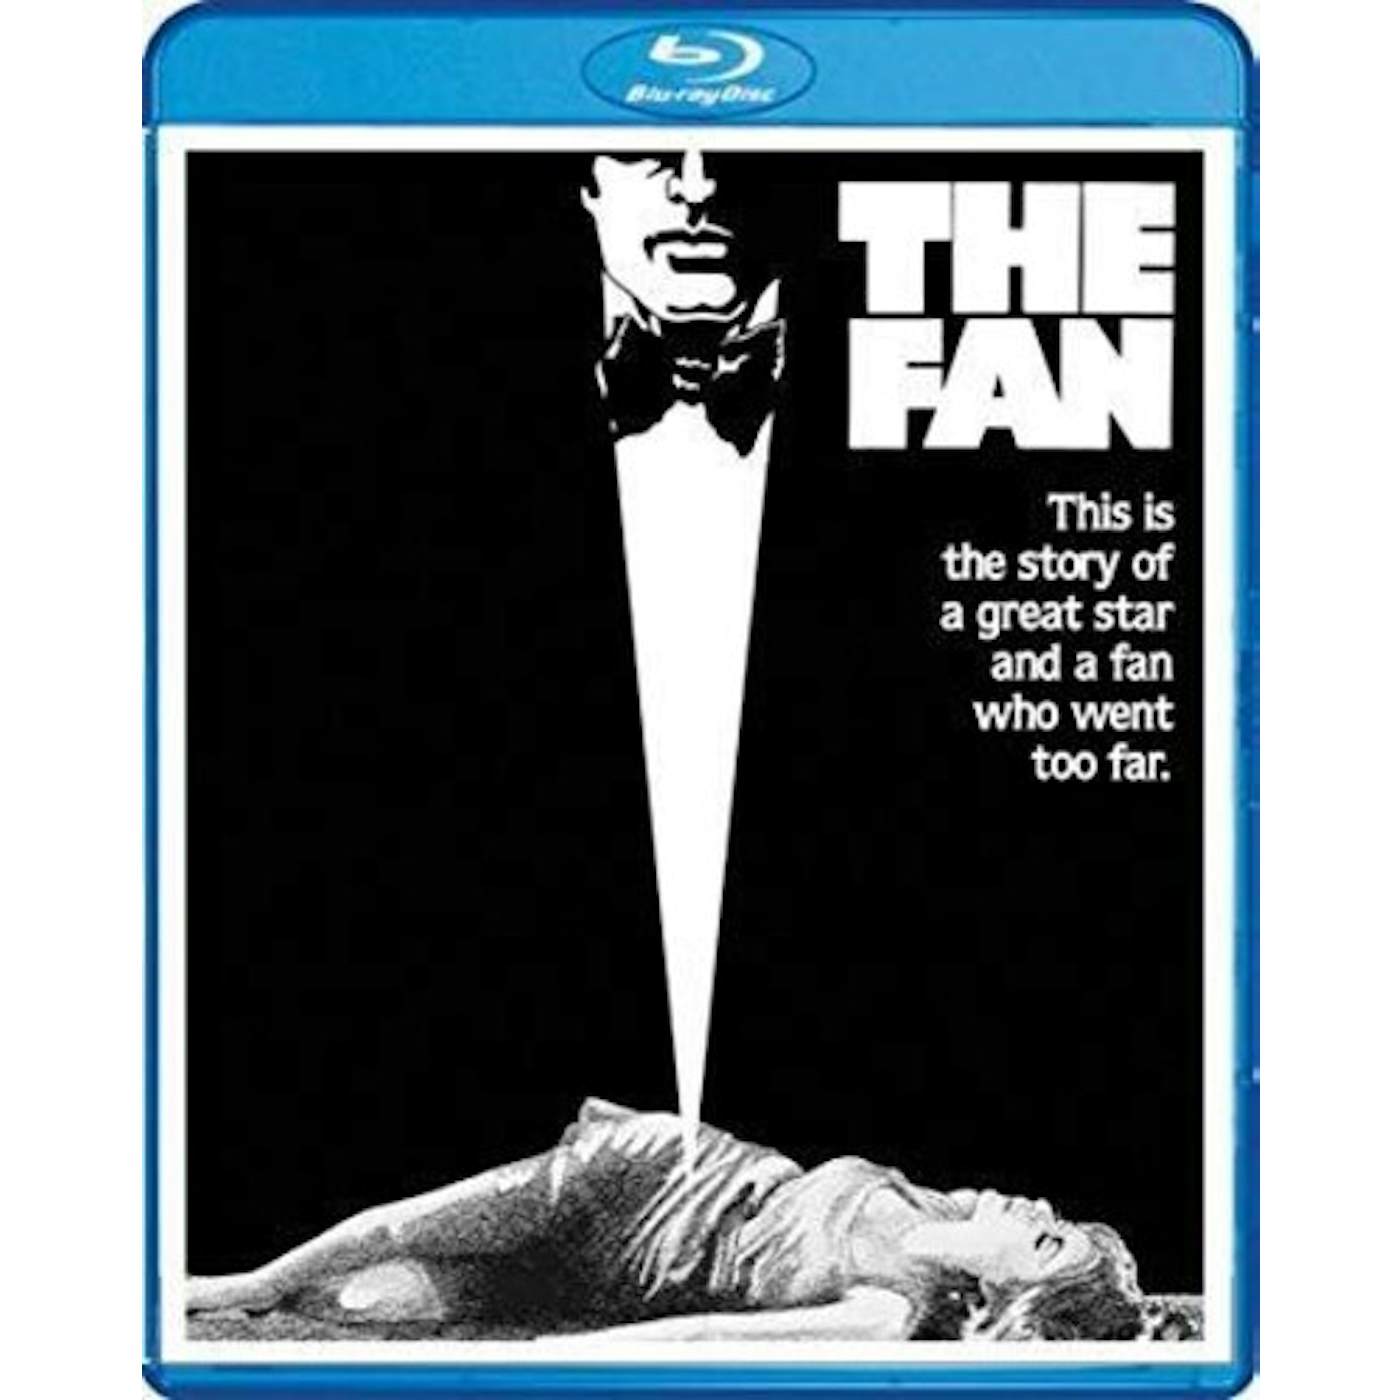 FAN (1981) Blu-ray